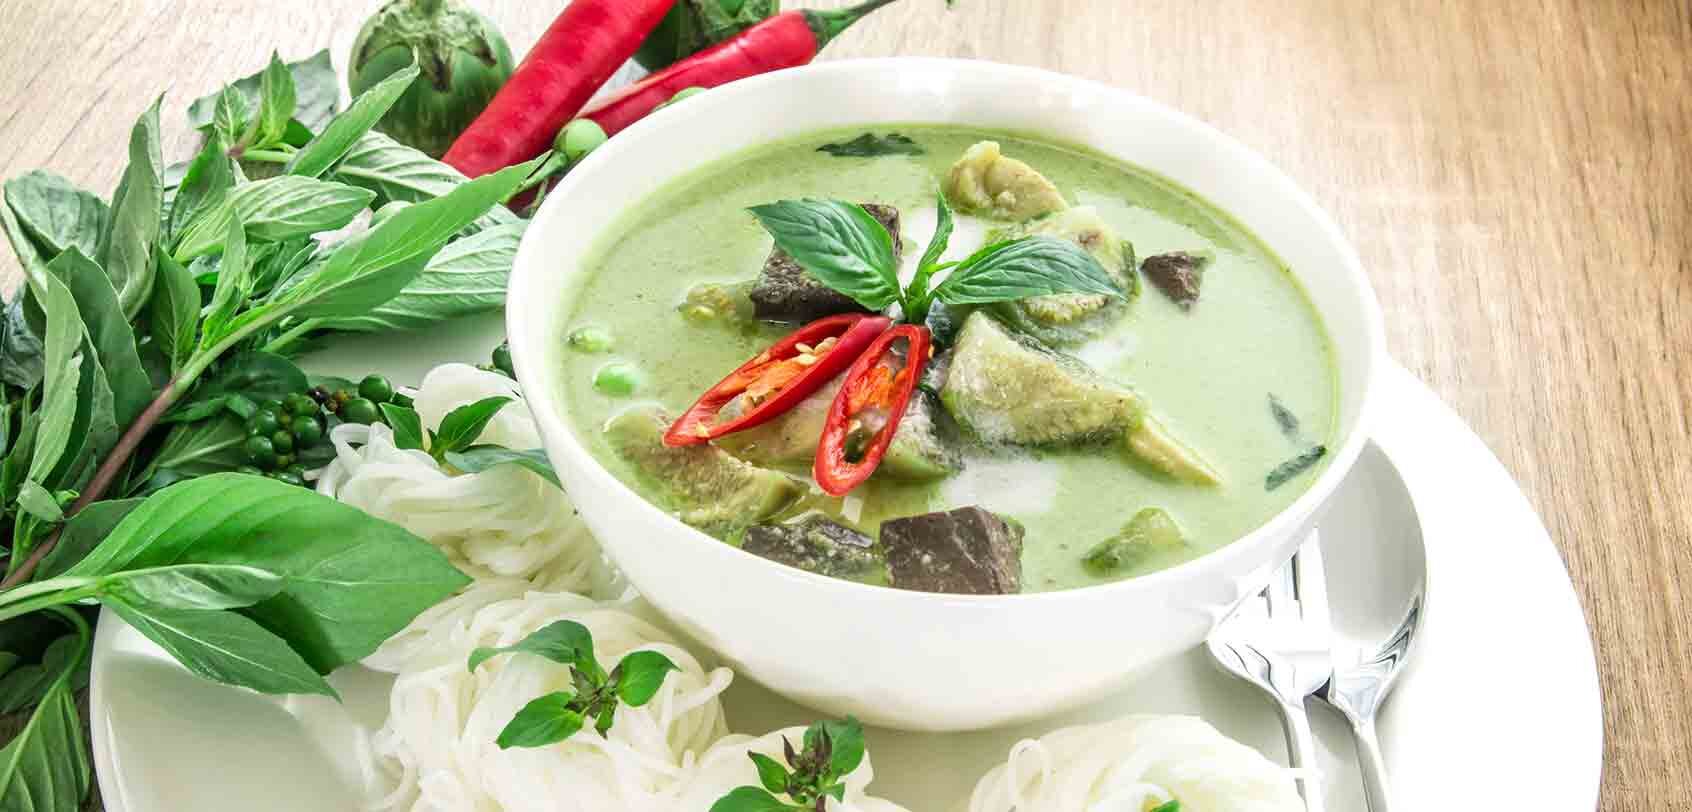 gang-keow-wan-gai-green-chicken-curry-thai-food-must-eat-thailand-dishes-cuisine.jpg